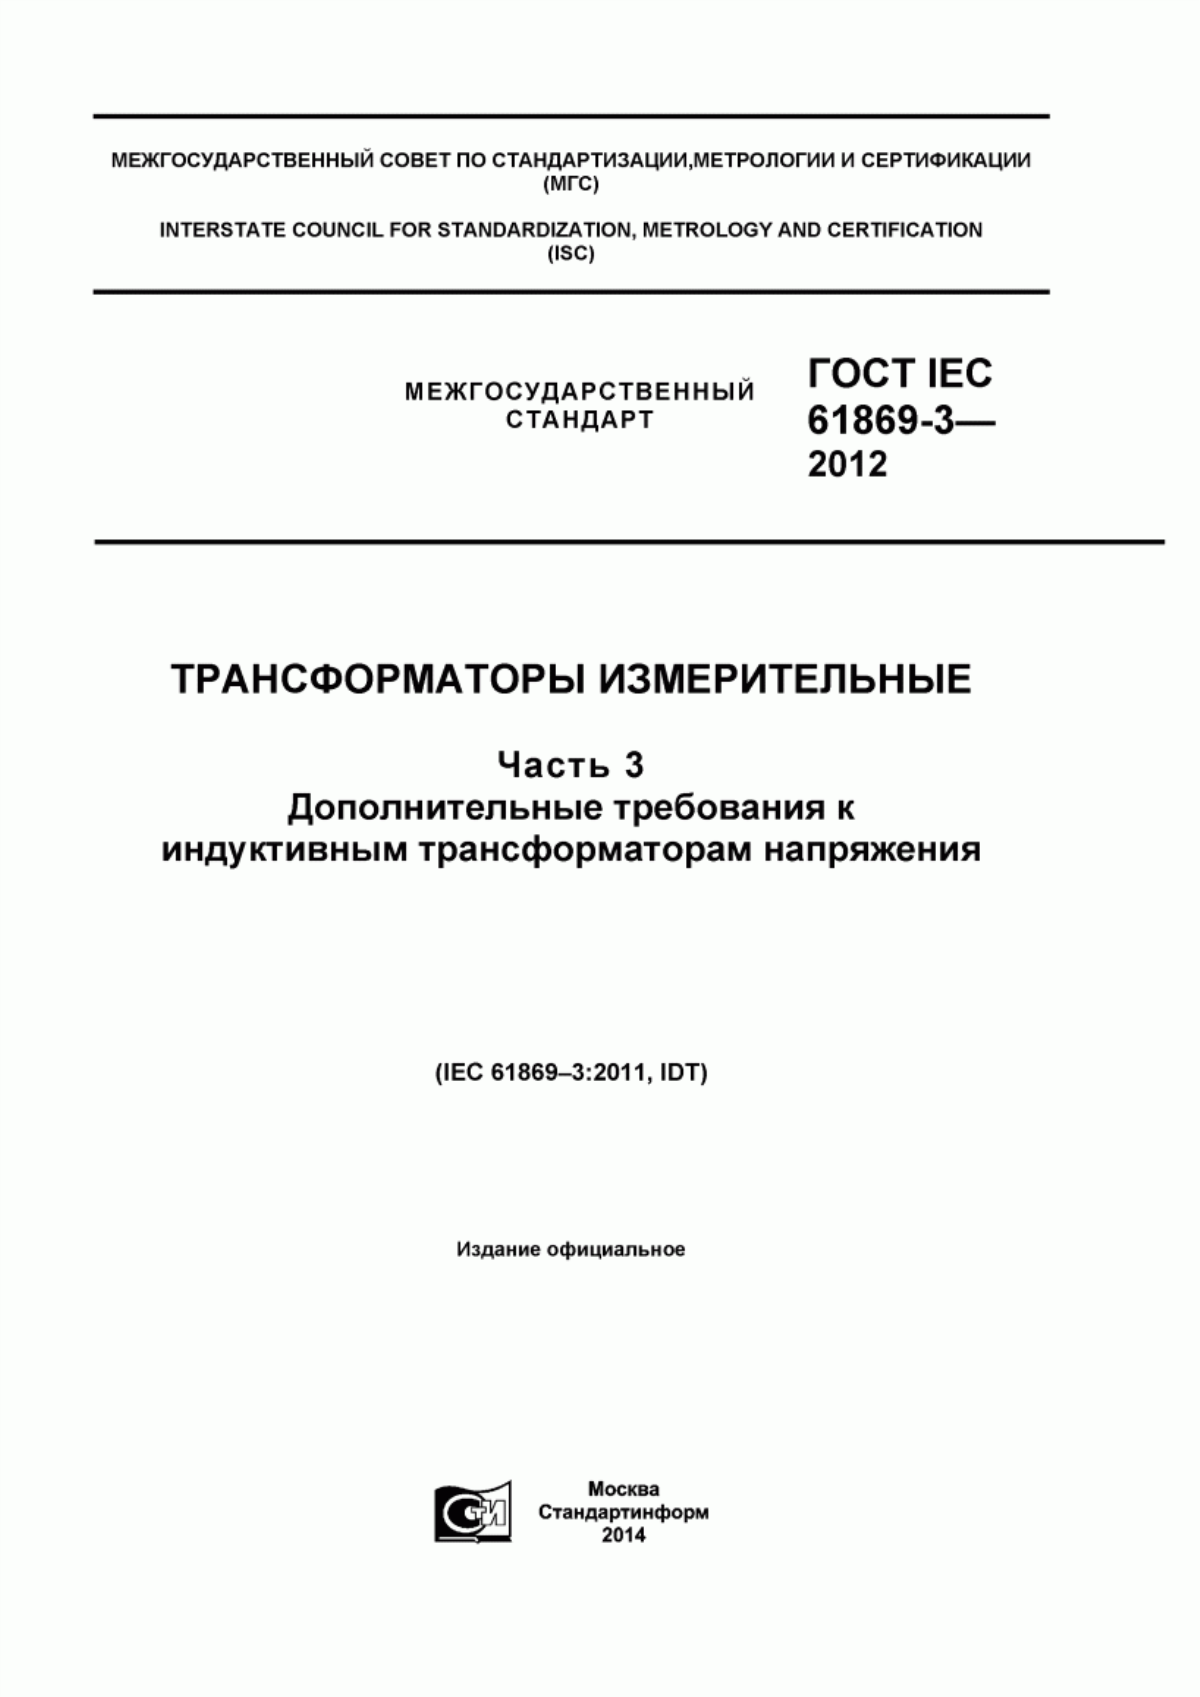 ГОСТ IEC 61869-3-2012 Трансформаторы измерительные. Часть 3. Дополнительные требования к индуктивным трансформаторам напряжения